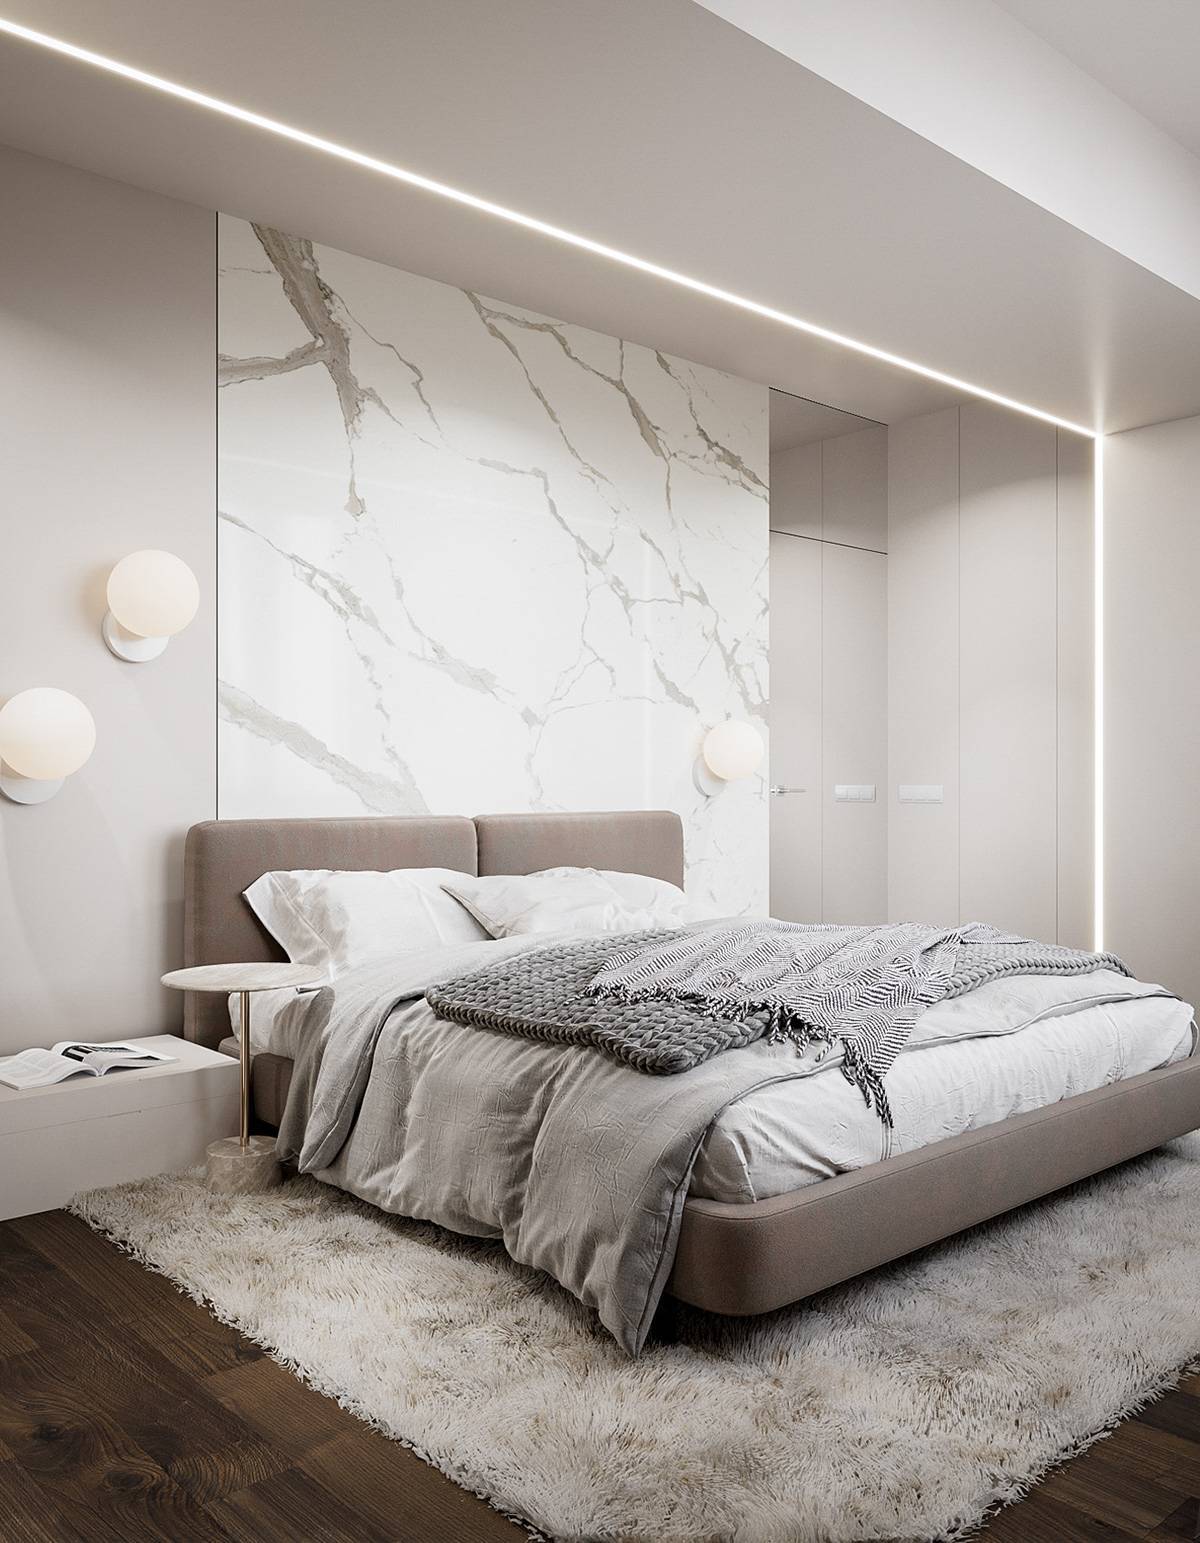 Фисташковая спальня: примеры уютного дизайна современной спальни в фисташковых тонах (150 фото)